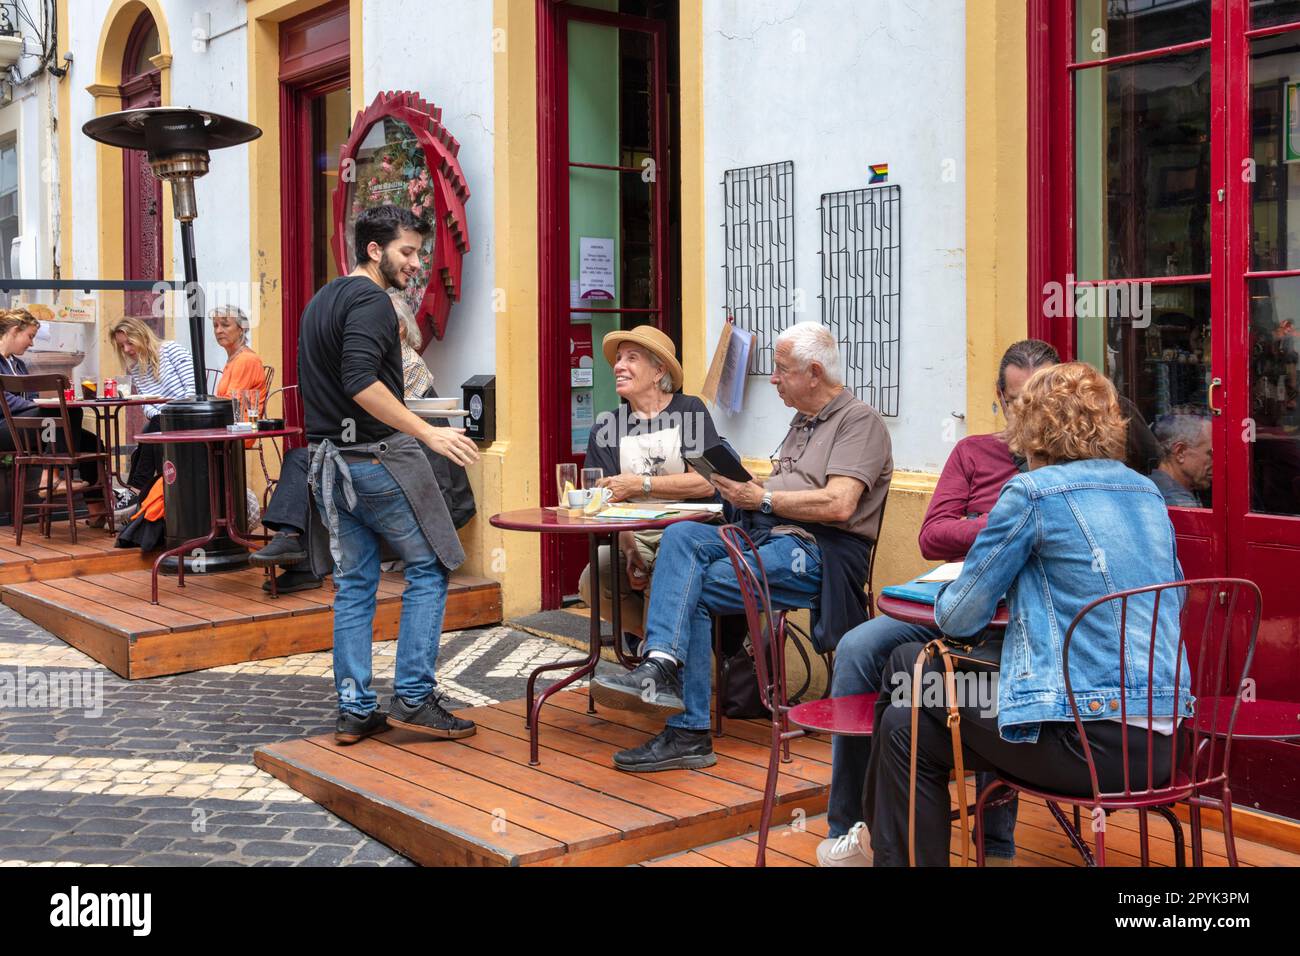 Portugal, Azores, Sao Miguel Island, Ponta Delgada. Outdoor restaurant Cantinho dos Anjos. Stock Photo